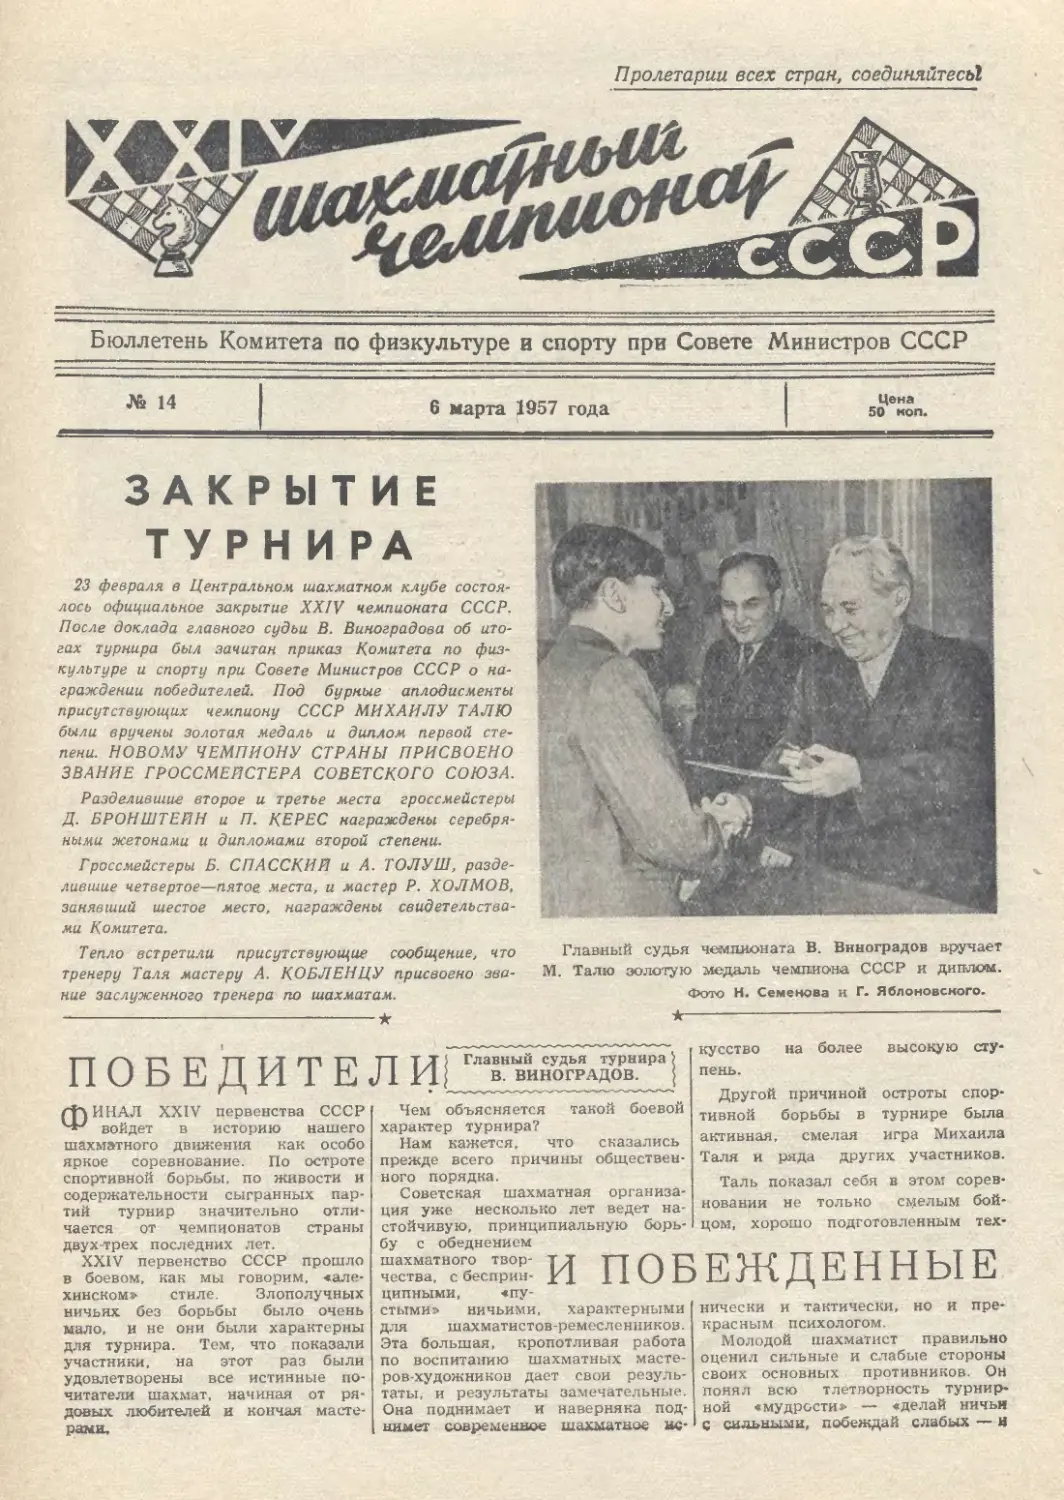 № 14 - 6 марта 1957 г.
Закрытие турнира
В.Виноградов - Победители и побежденные